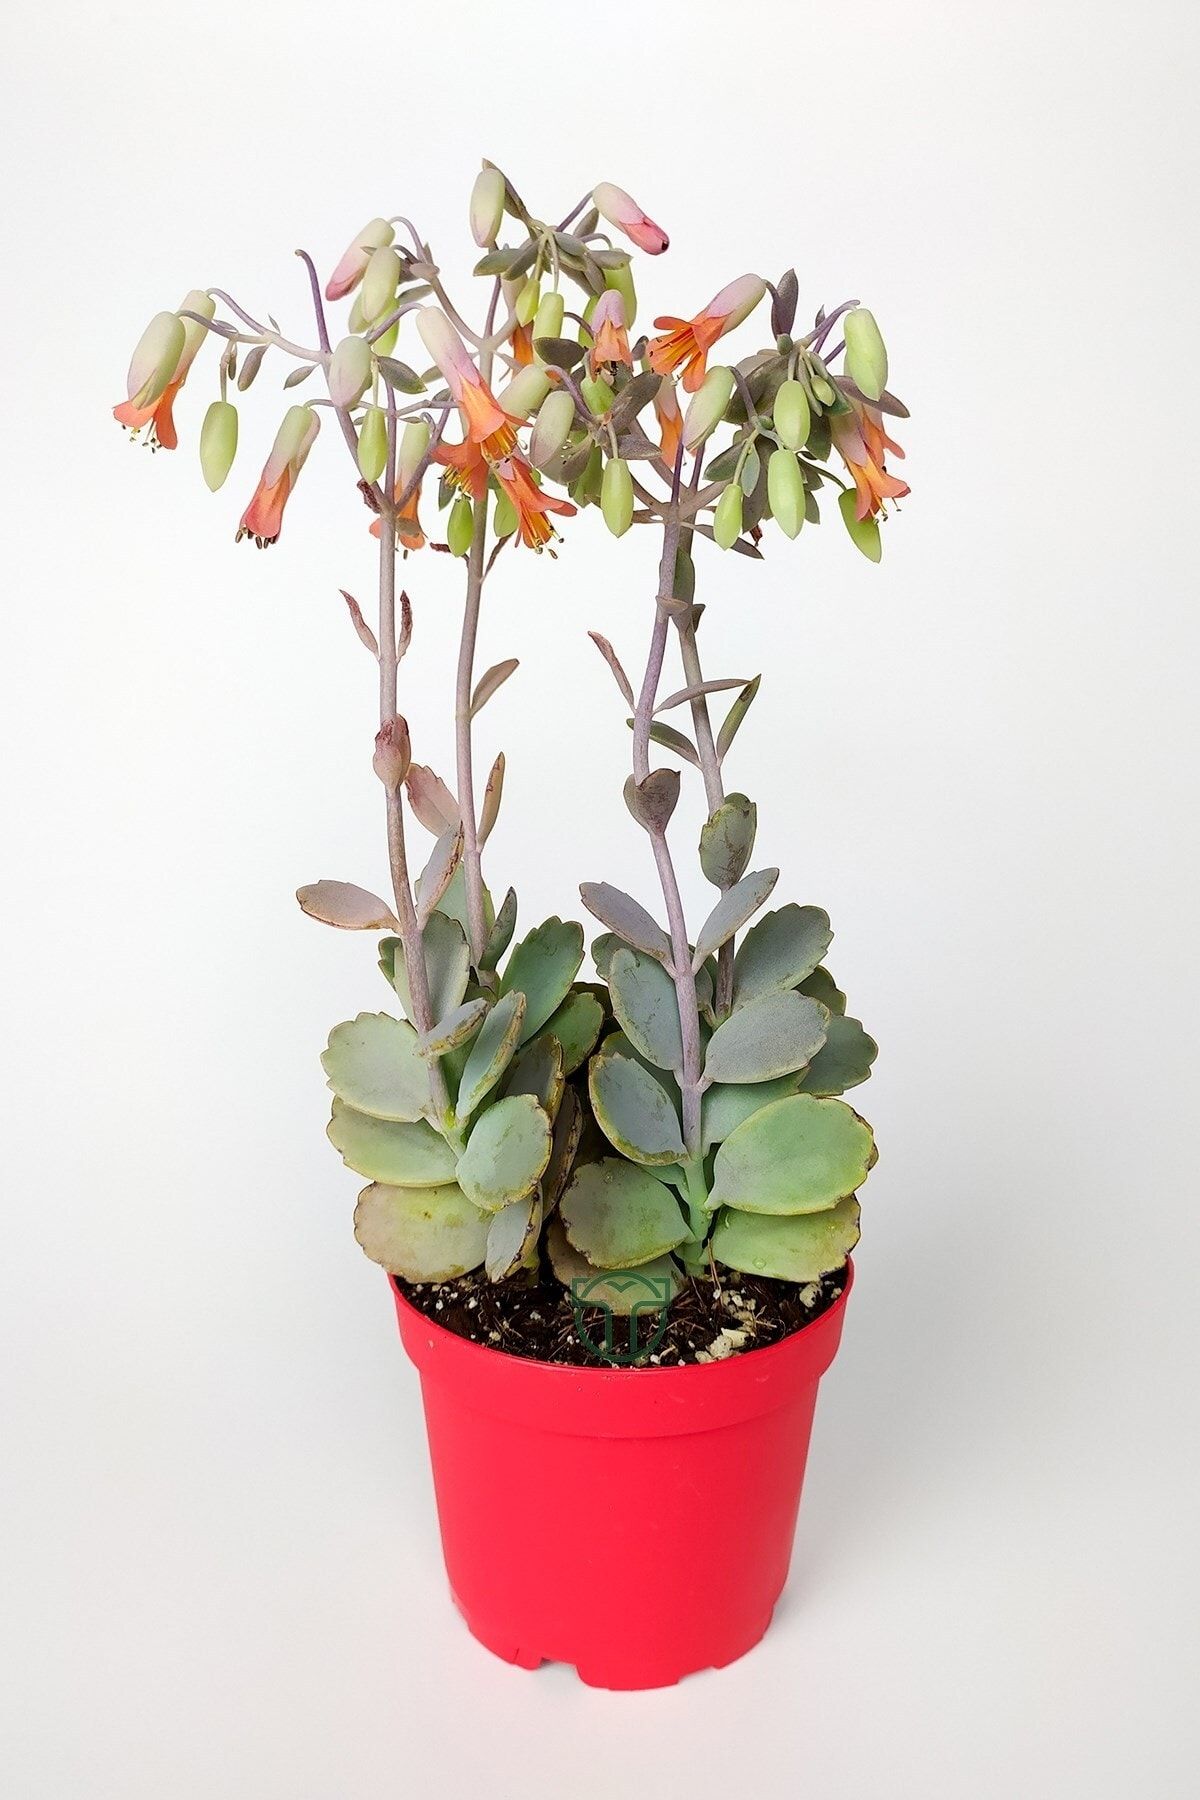 Toptan Kaktüs Bryophyllum Fedtschenkoi Kalanchoe Sukulent Lavanta Tarakları 8.5 Cm Kırmızı Saksıda